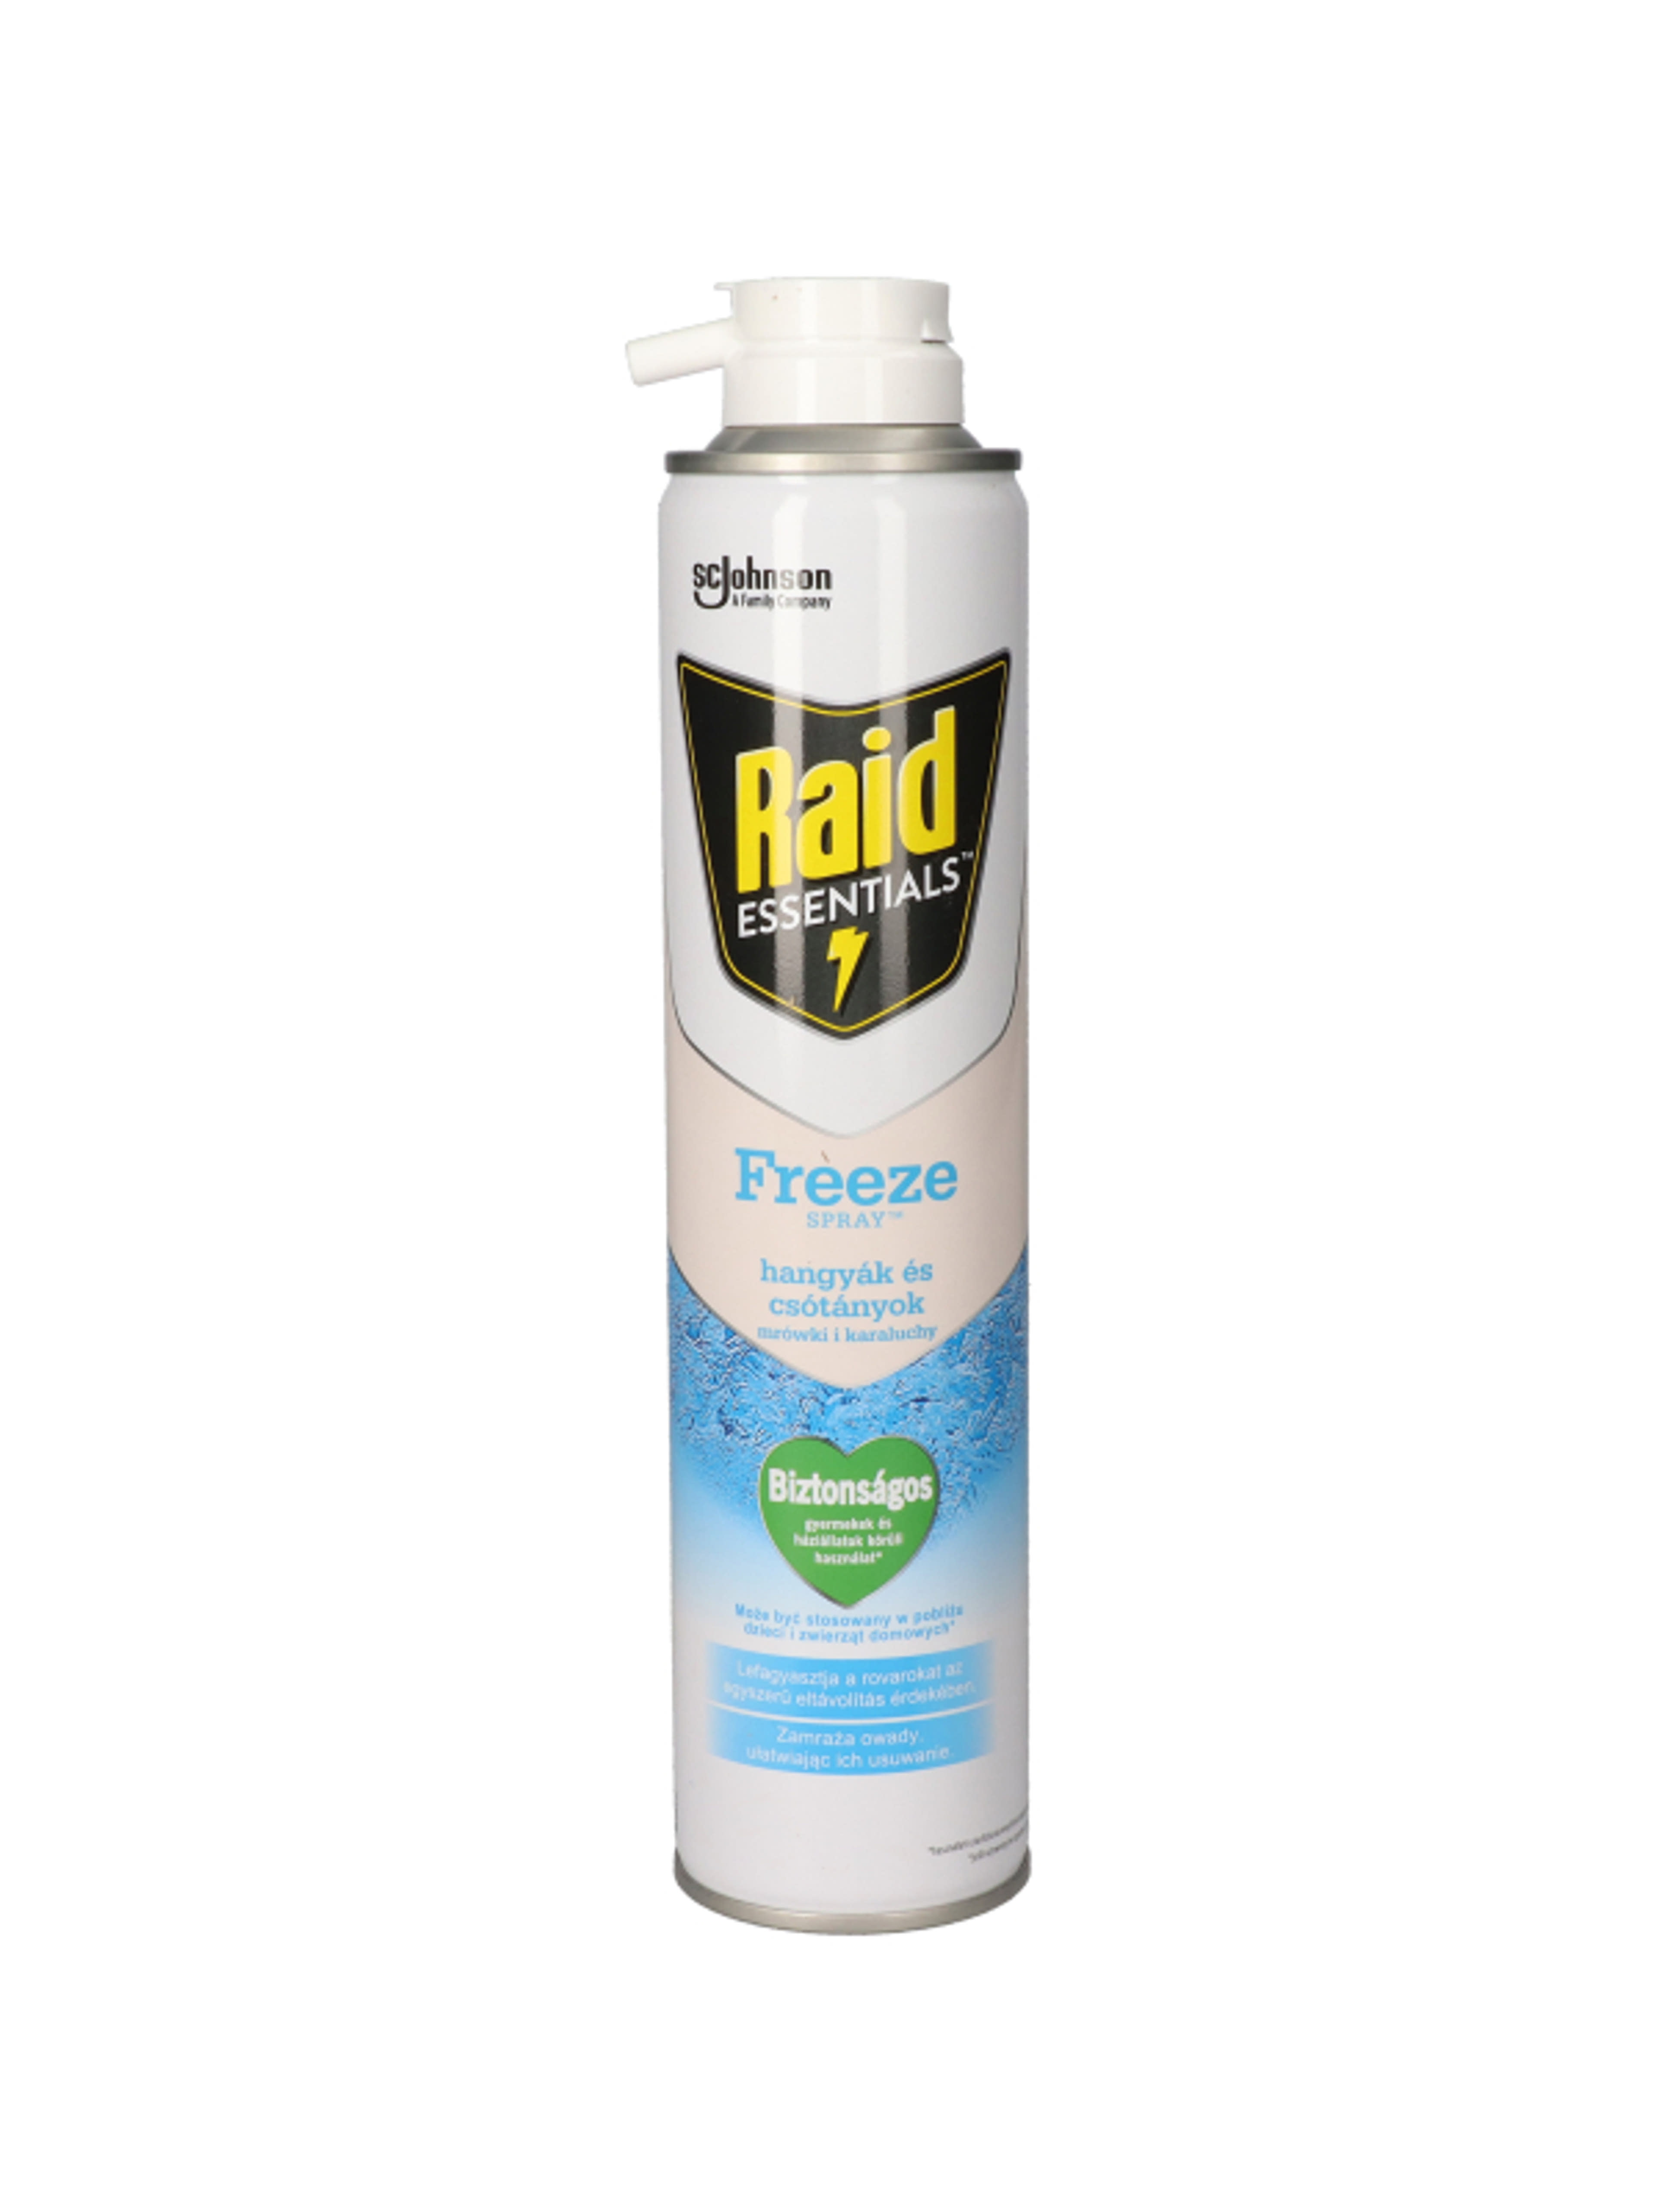 Raid Essentials Freeze rovarfagyasztó spray - 350 ml-2